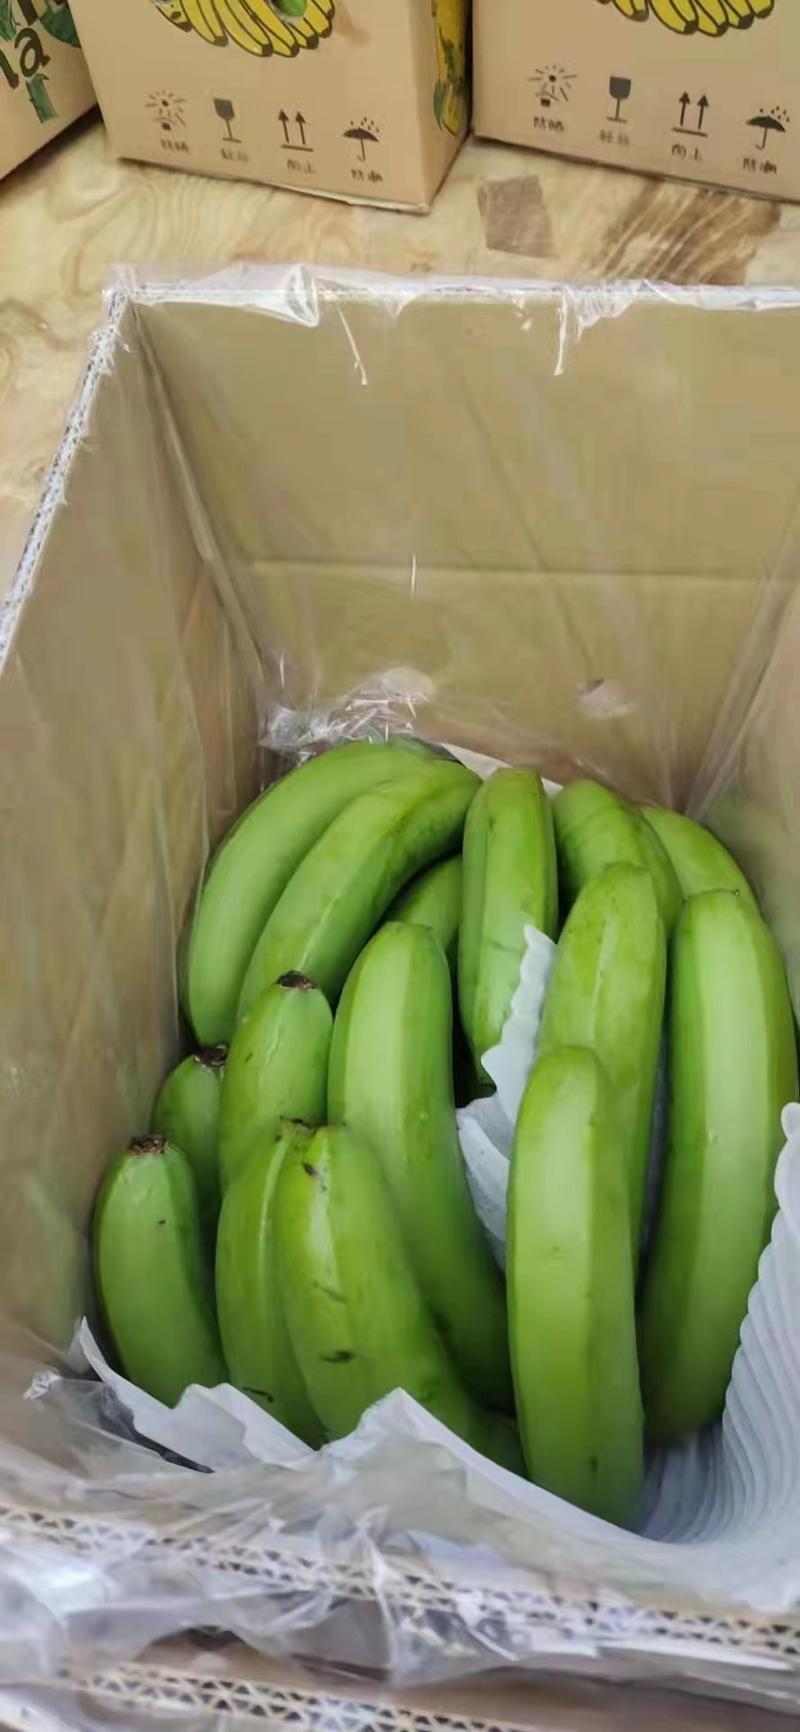 香蕉是芭蕉科芭蕉属多年生常绿草本热带果树。1958年从越